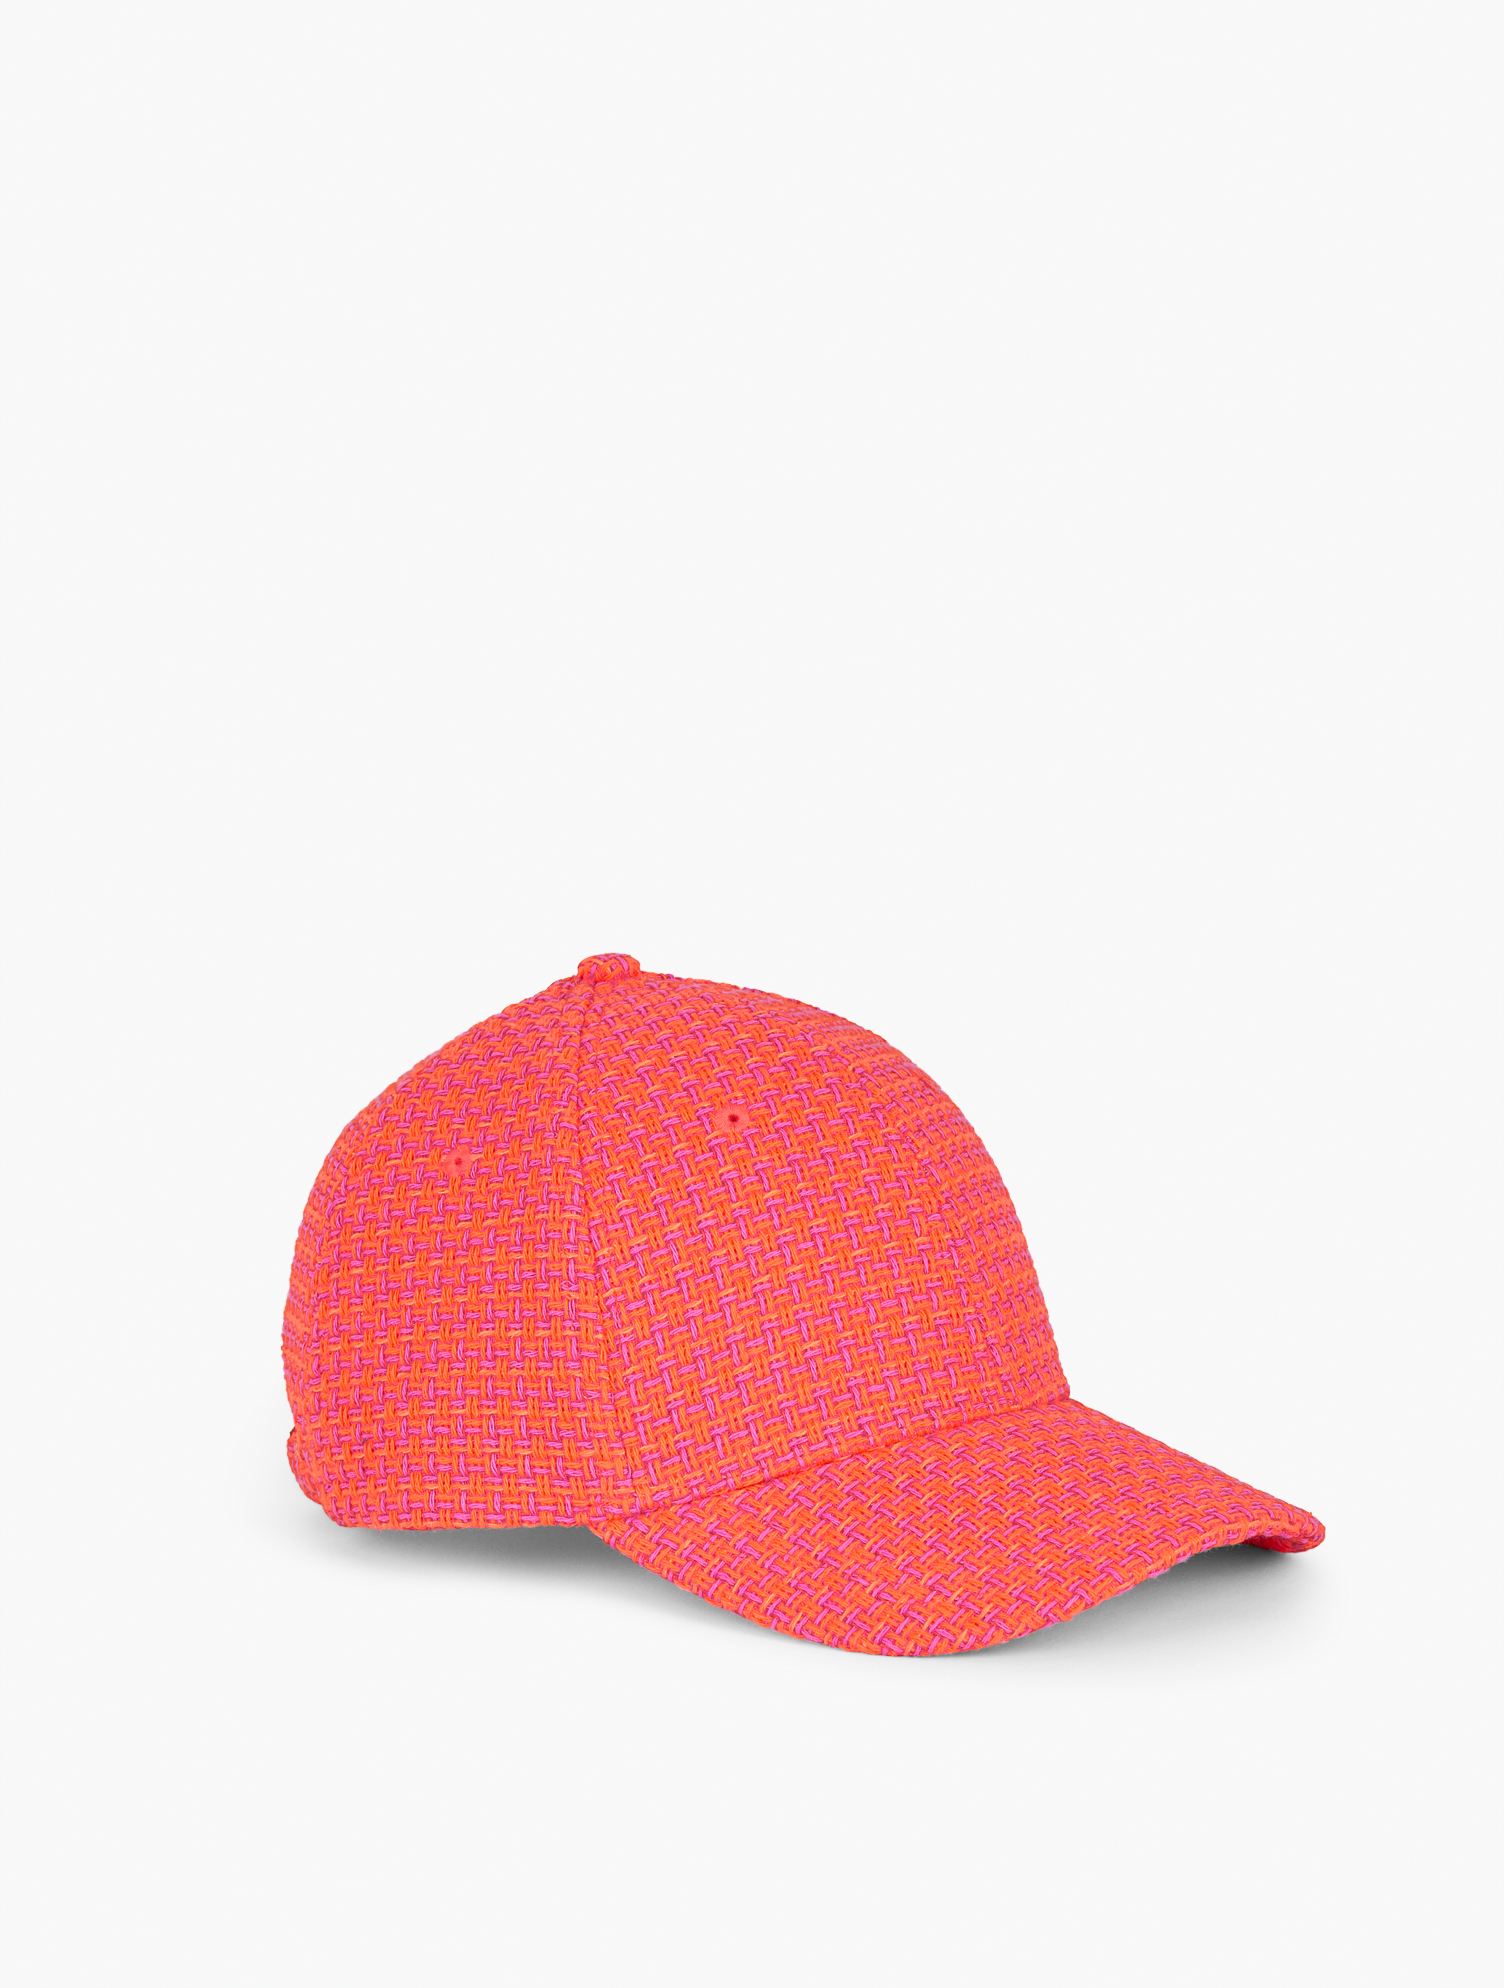 Talbots Tweed Baseball Cap - Pink - 001